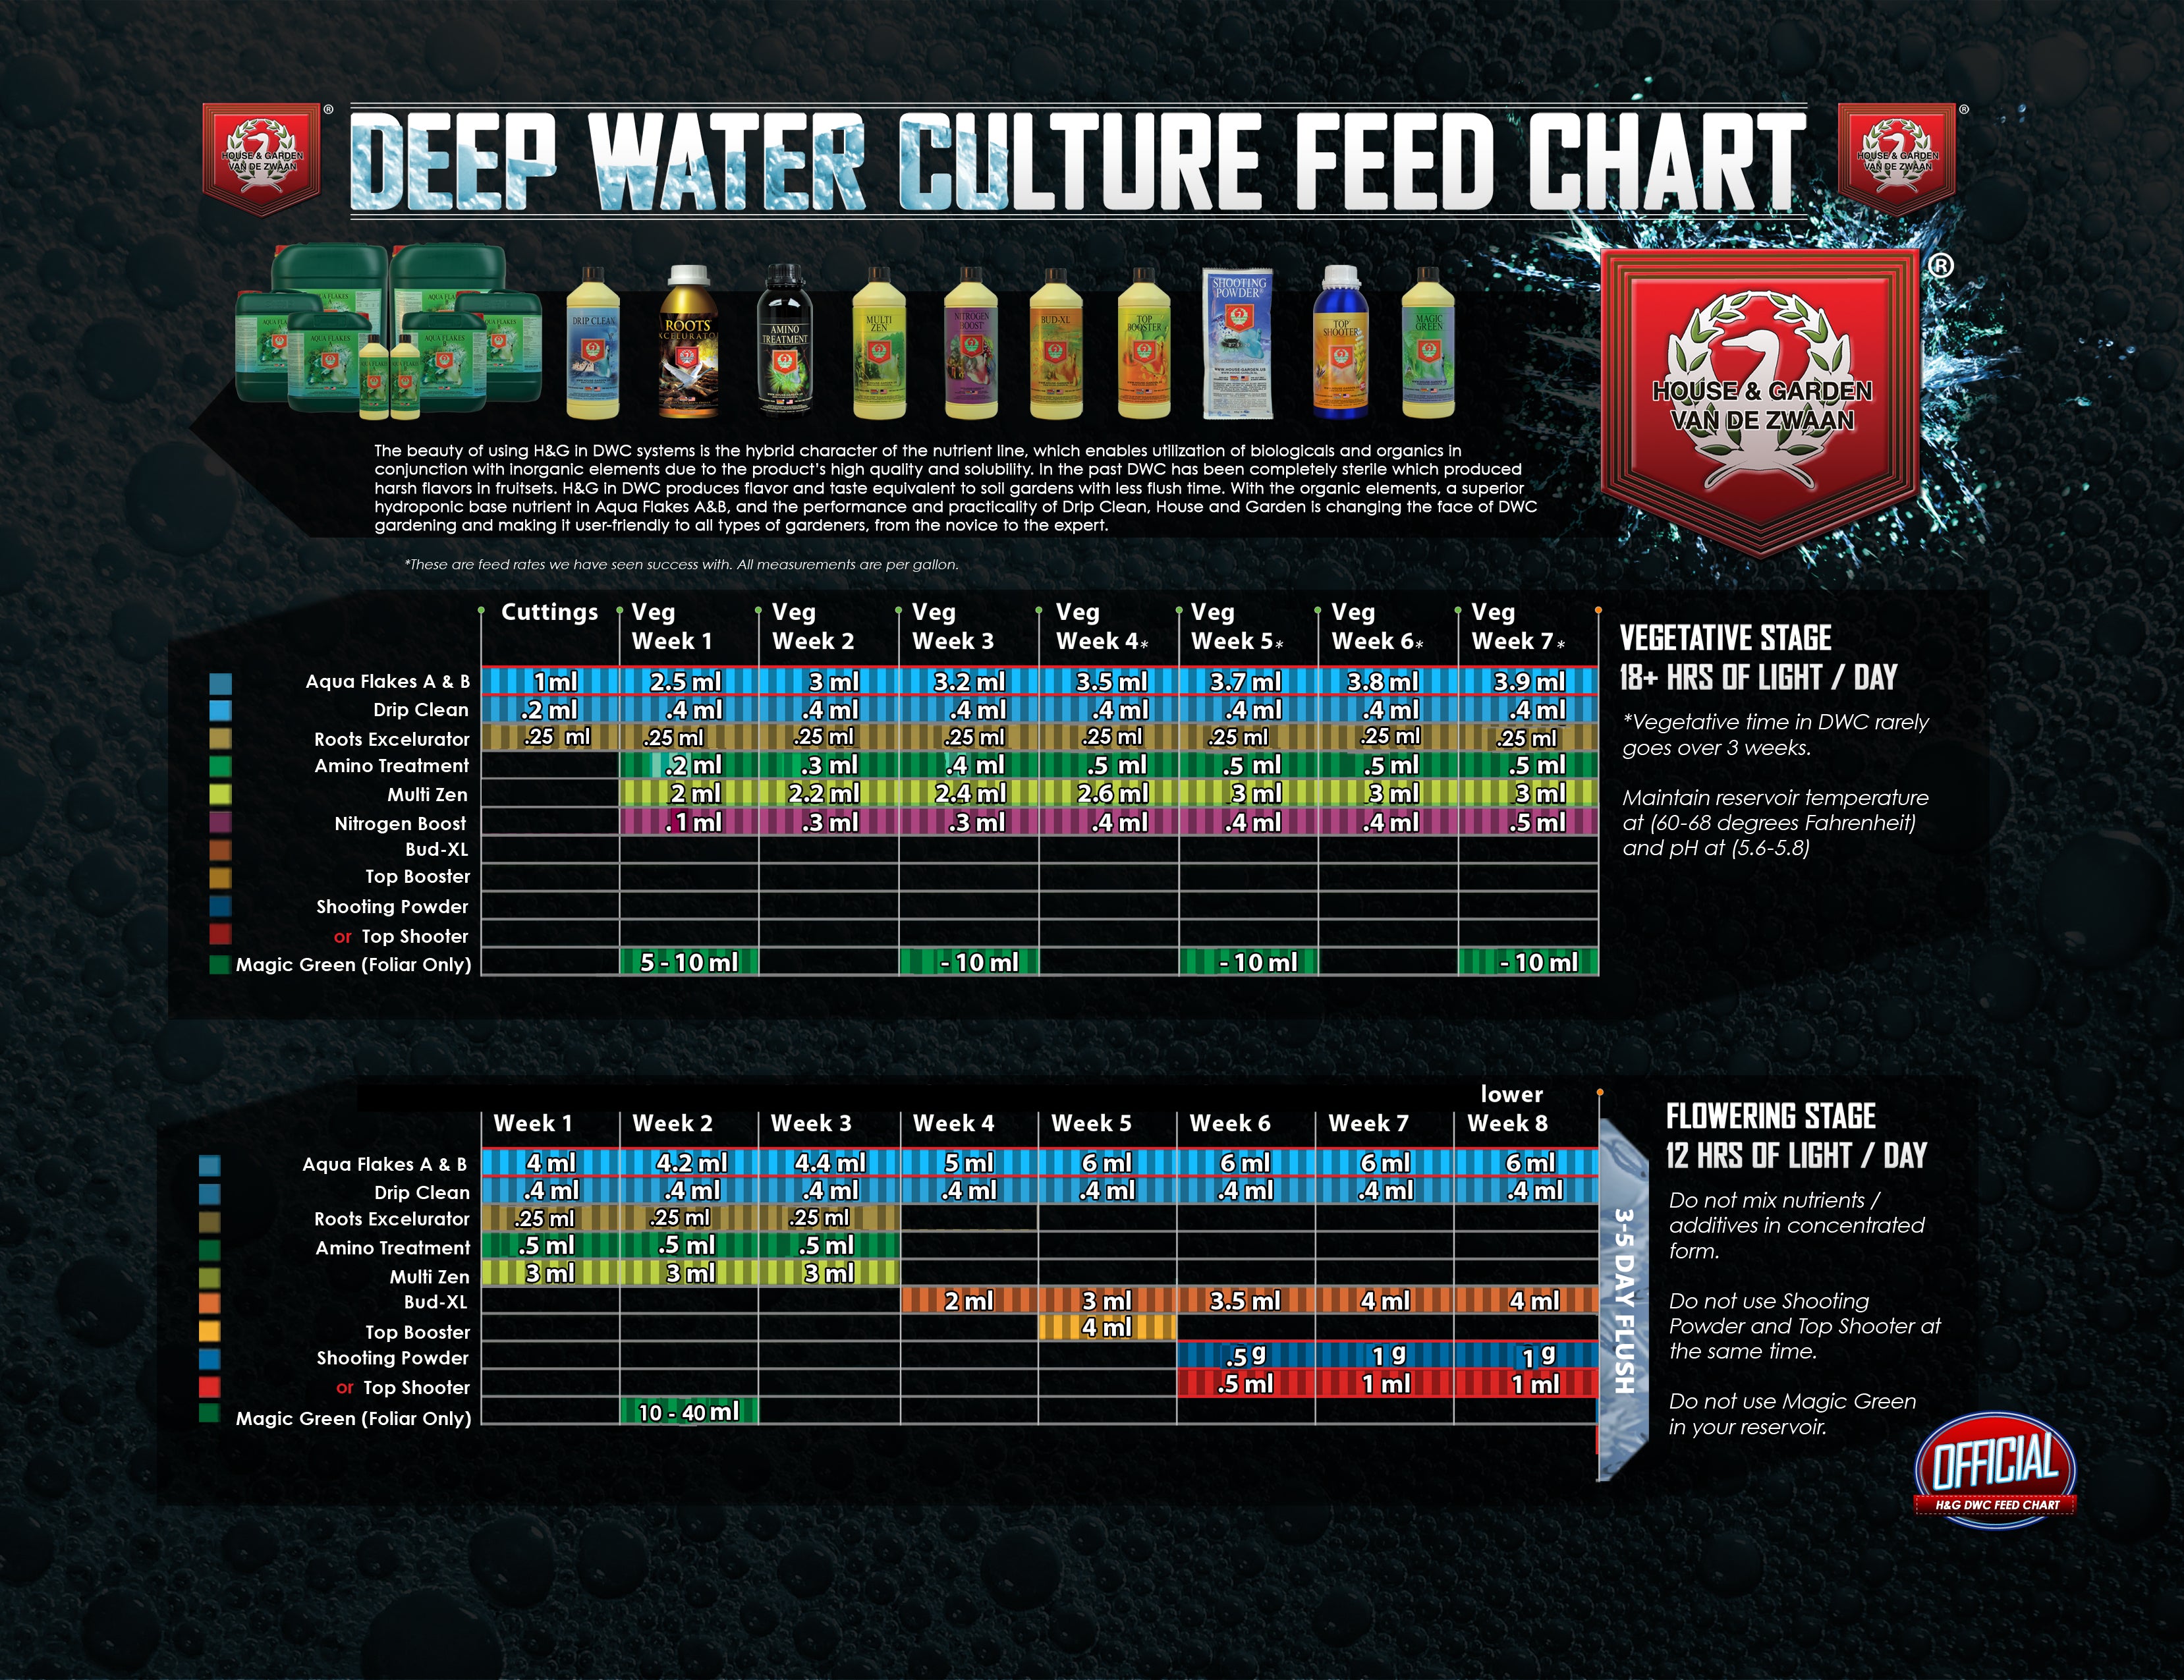 General Hydroponics Maxi Series Feeding Chart